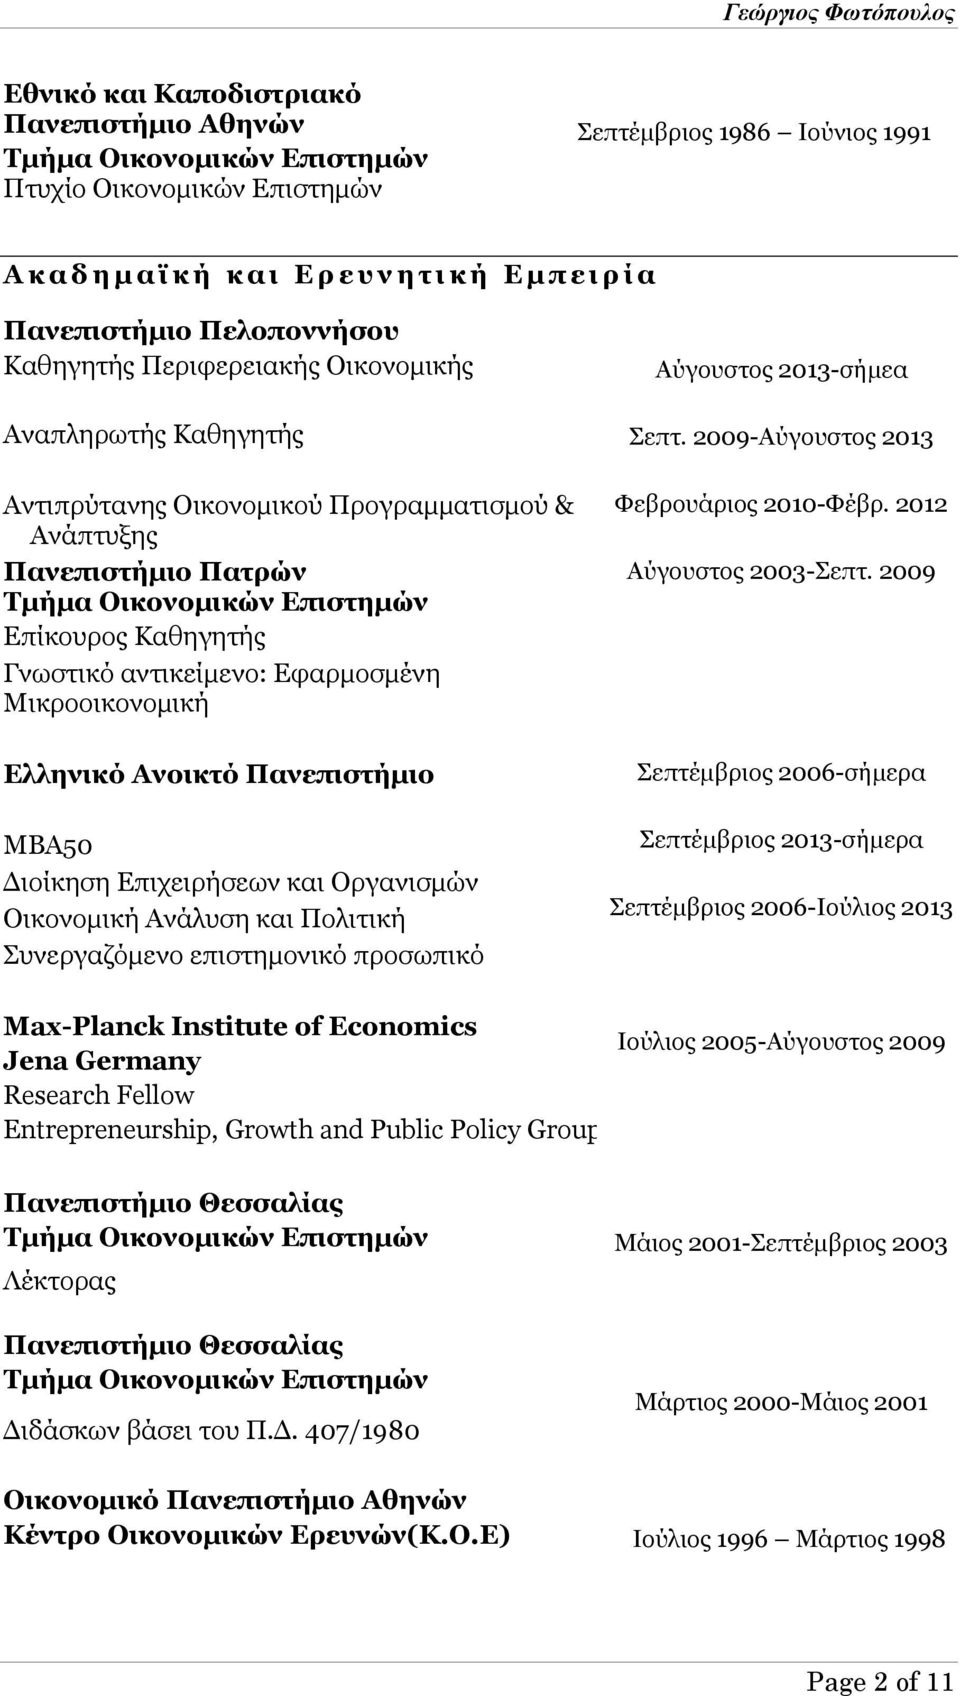 Καθηγητής Γνωστικό αντικείμενο: Εφαρμοσμένη Μικροοικονομική Ελληνικό Ανοικτό Πανεπιστήμιο ΜΒΑ50 Διοίκηση Επιχειρήσεων και Οργανισμών Οικονομική Ανάλυση και Πολιτική Συνεργαζόμενο επιστημονικό